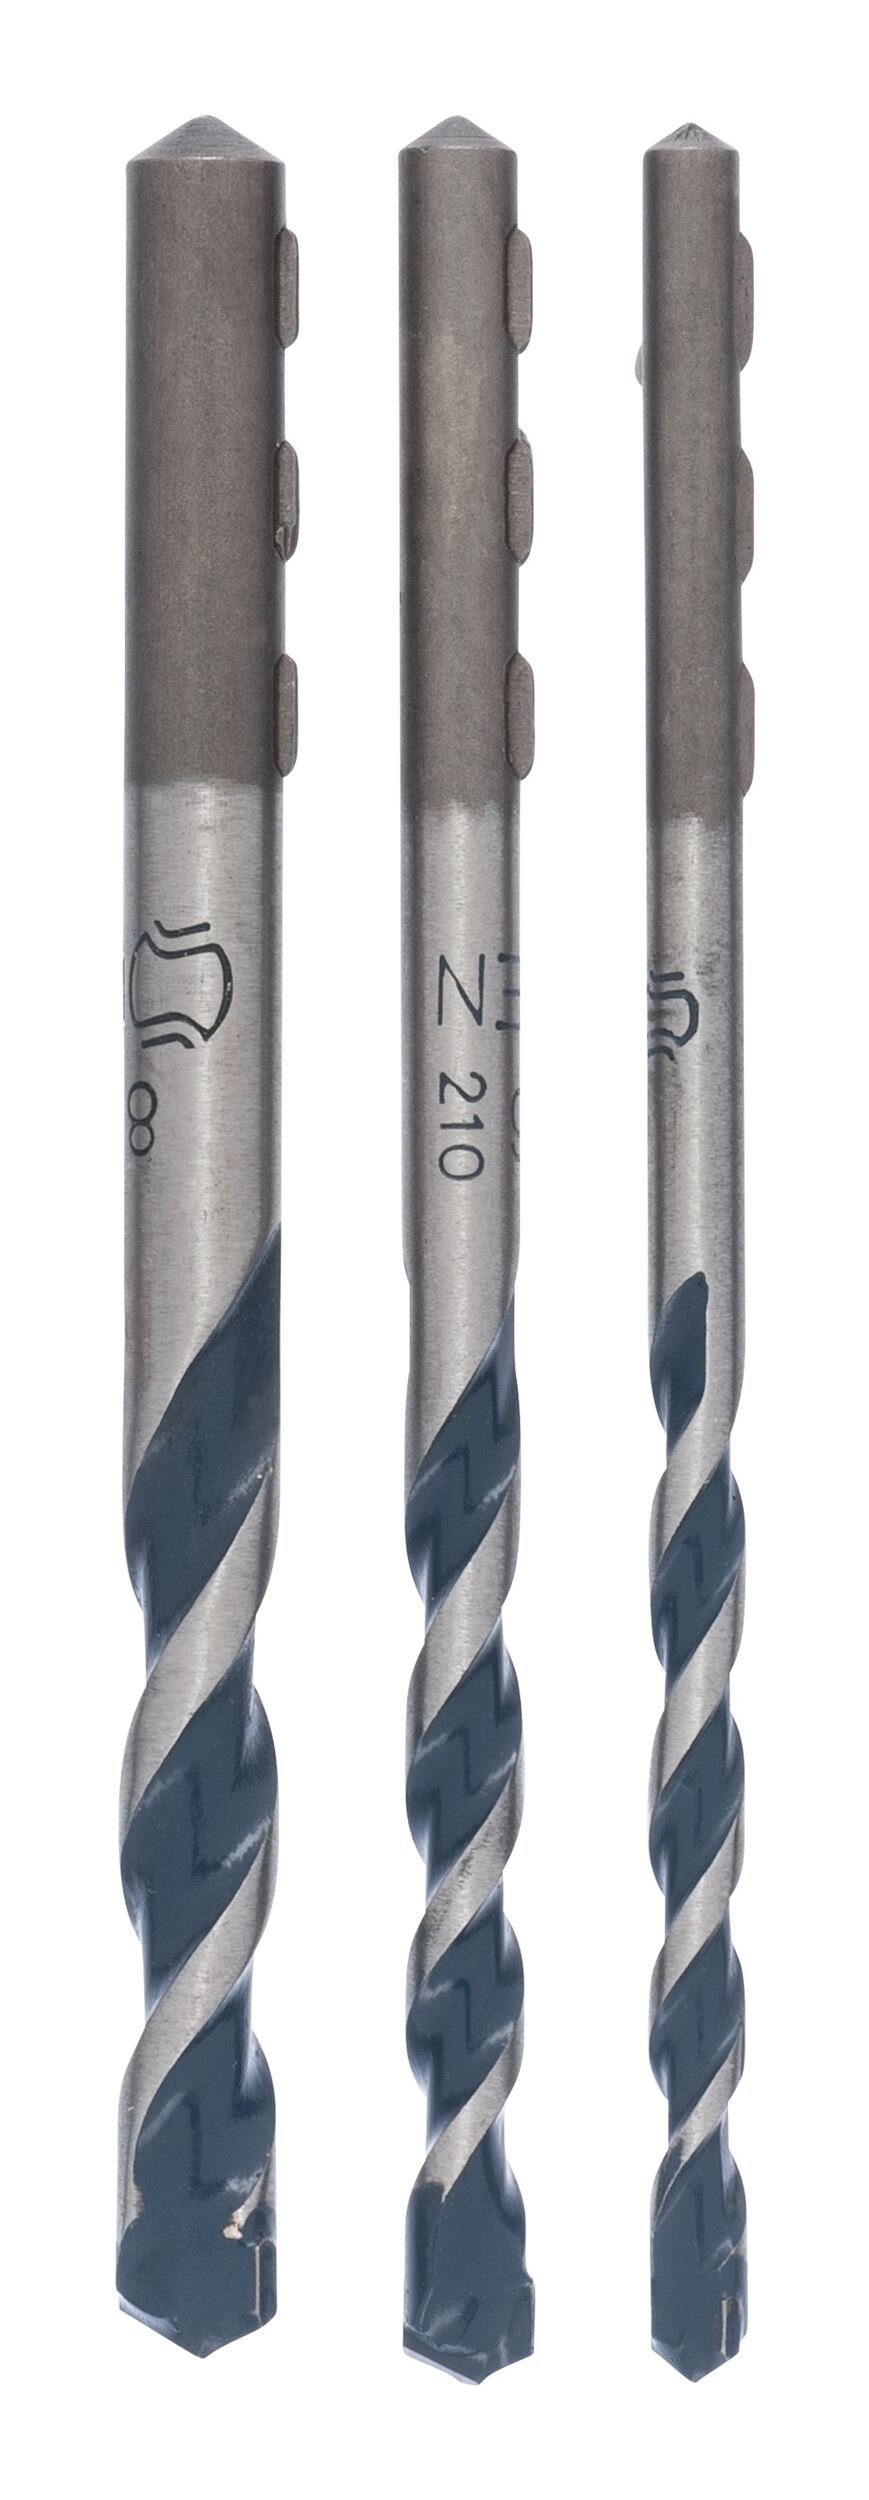 BOSCH Steinbohrer, CYL-5, Blue Granite Betonbohrer-Robust-Line-Set - 5 - 8 mm - 3-teilig